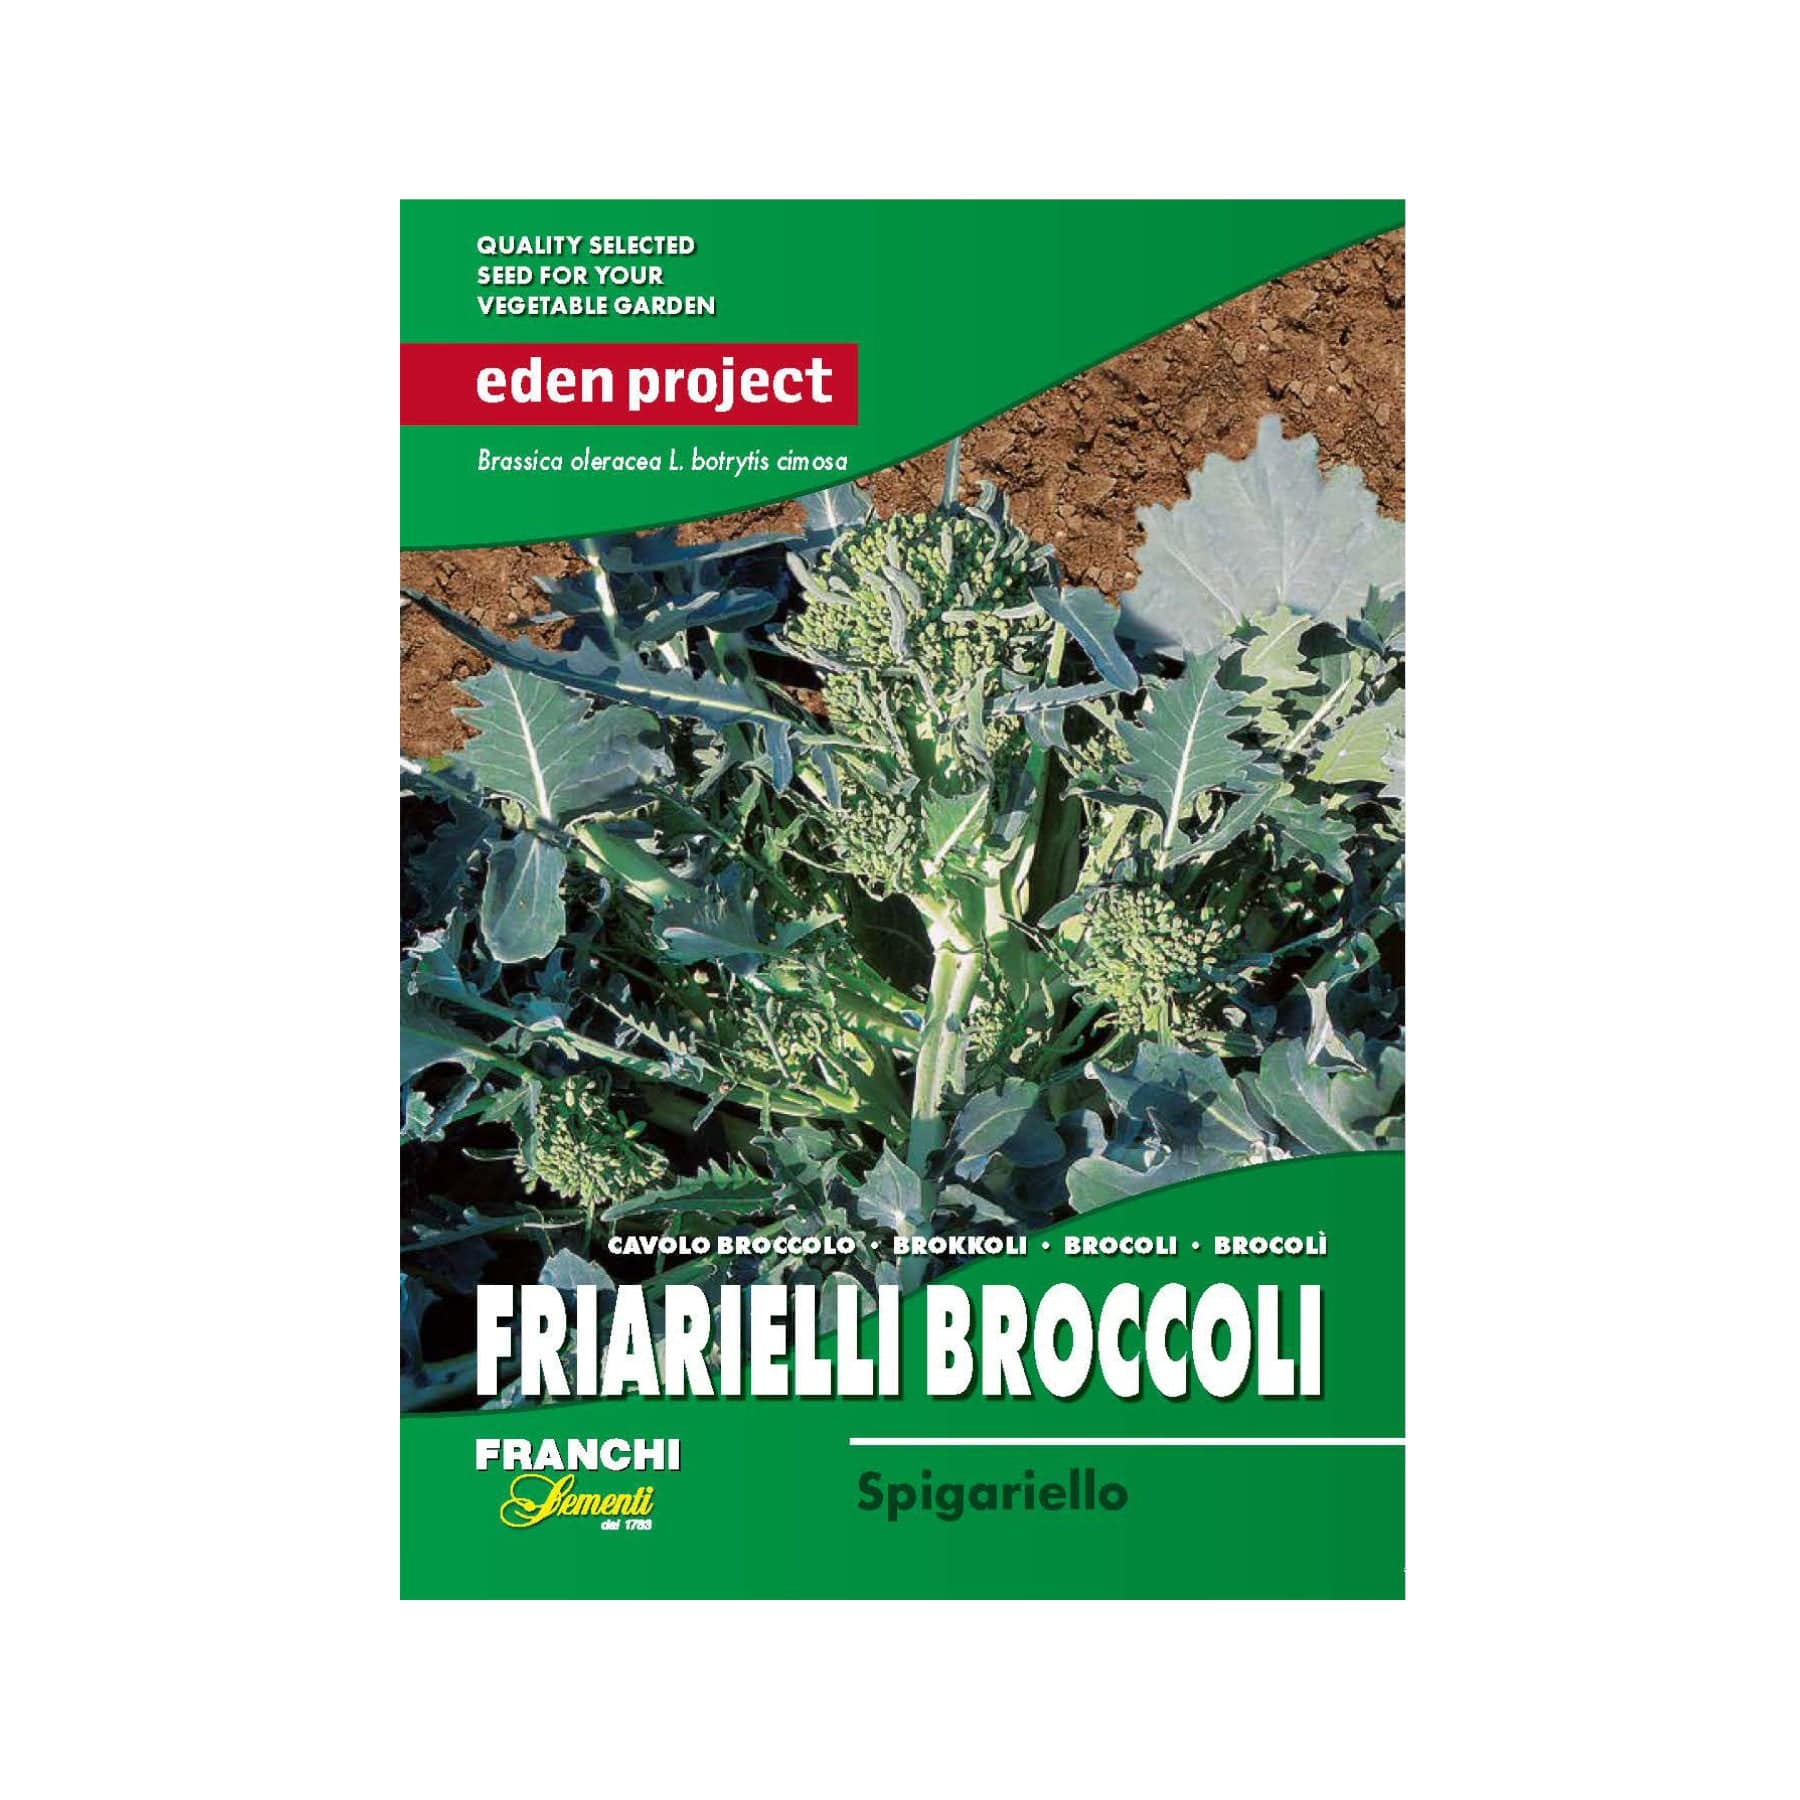 Friarielli broccoli spigariello seeds